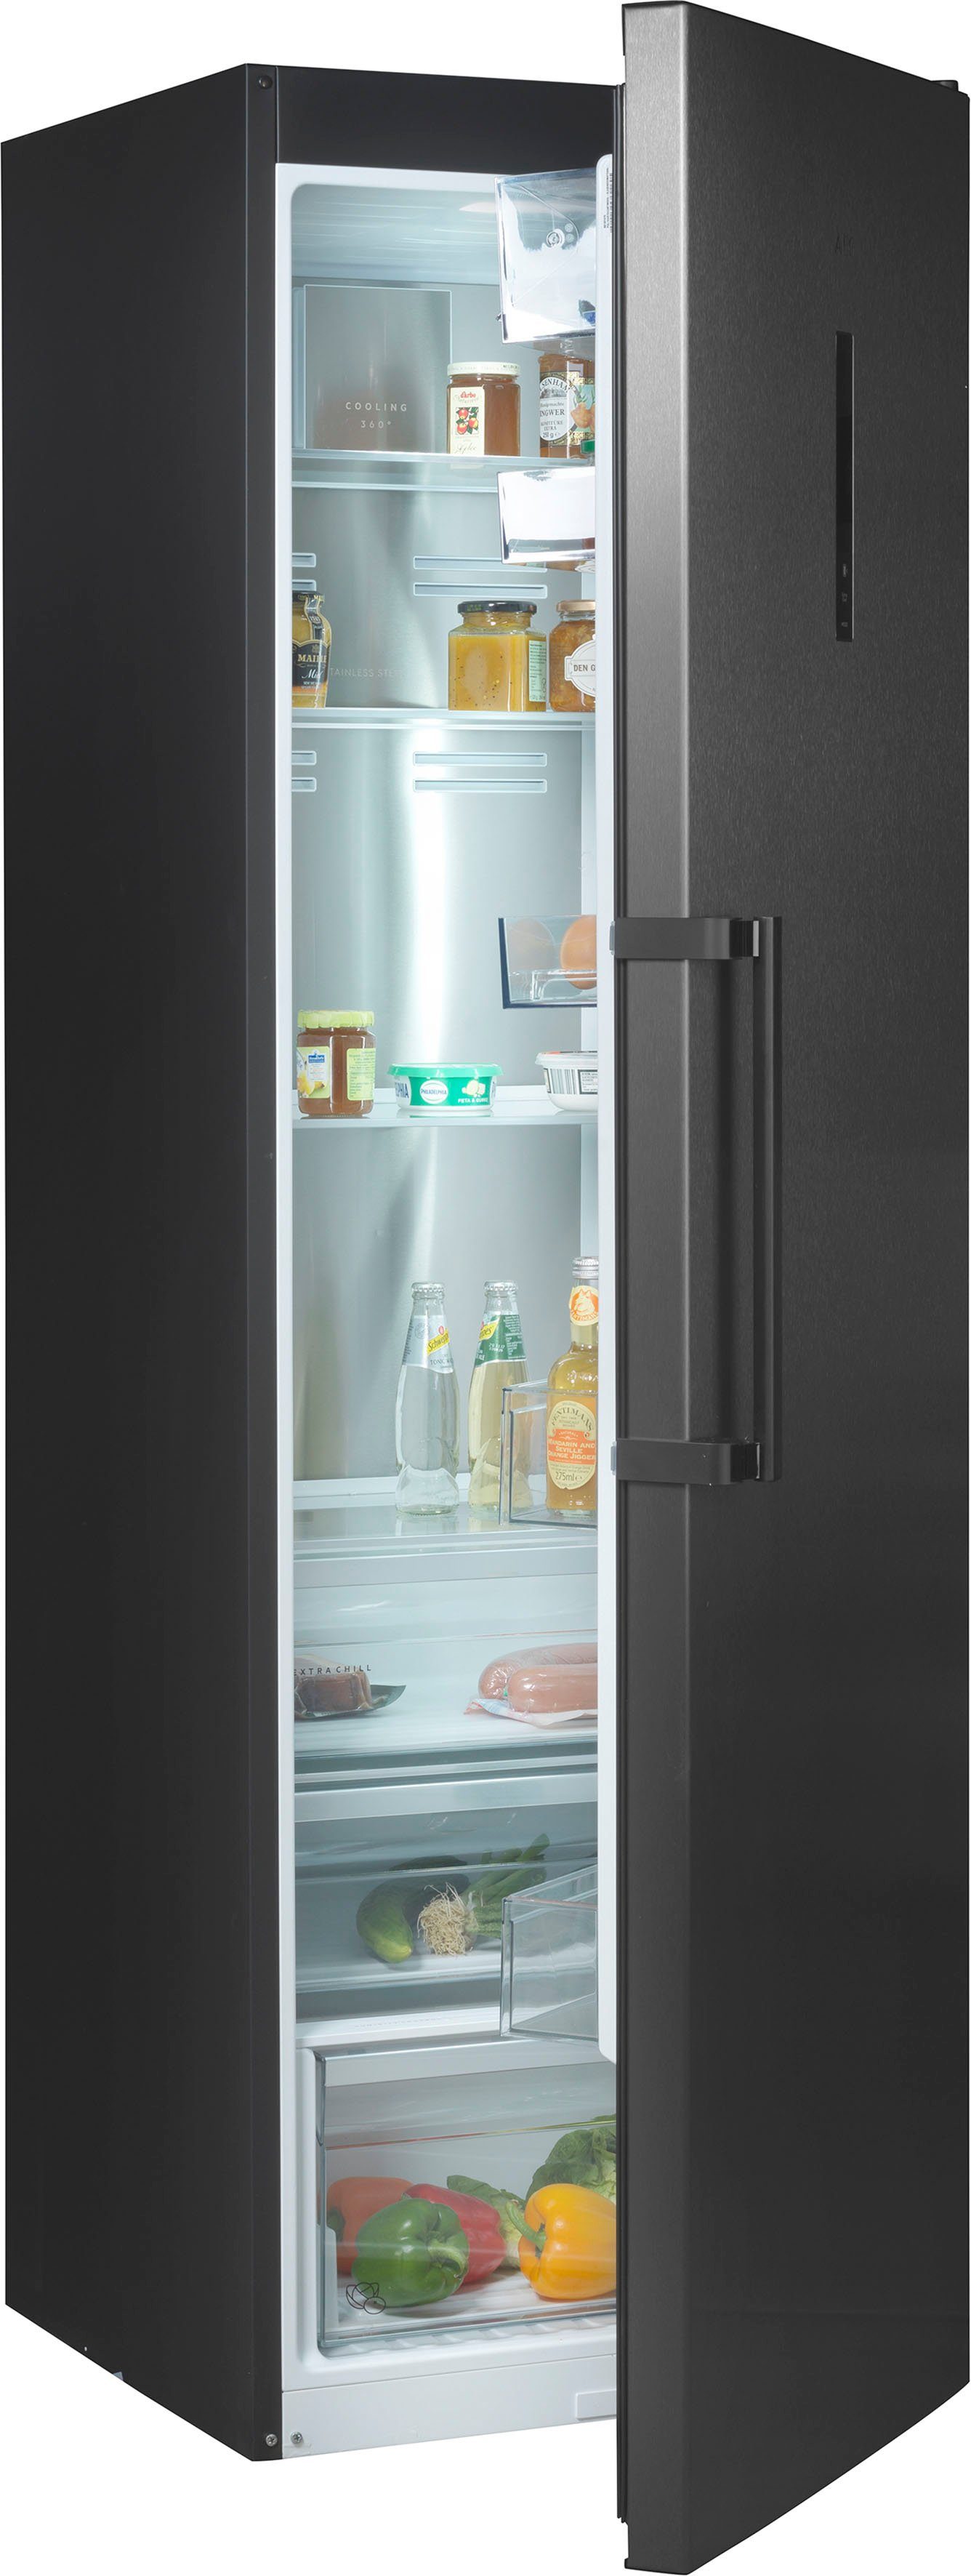 AEG Kühlschrank RKB738E5MB, 186 cm hoch, 59,5 cm breit online kaufen | OTTO